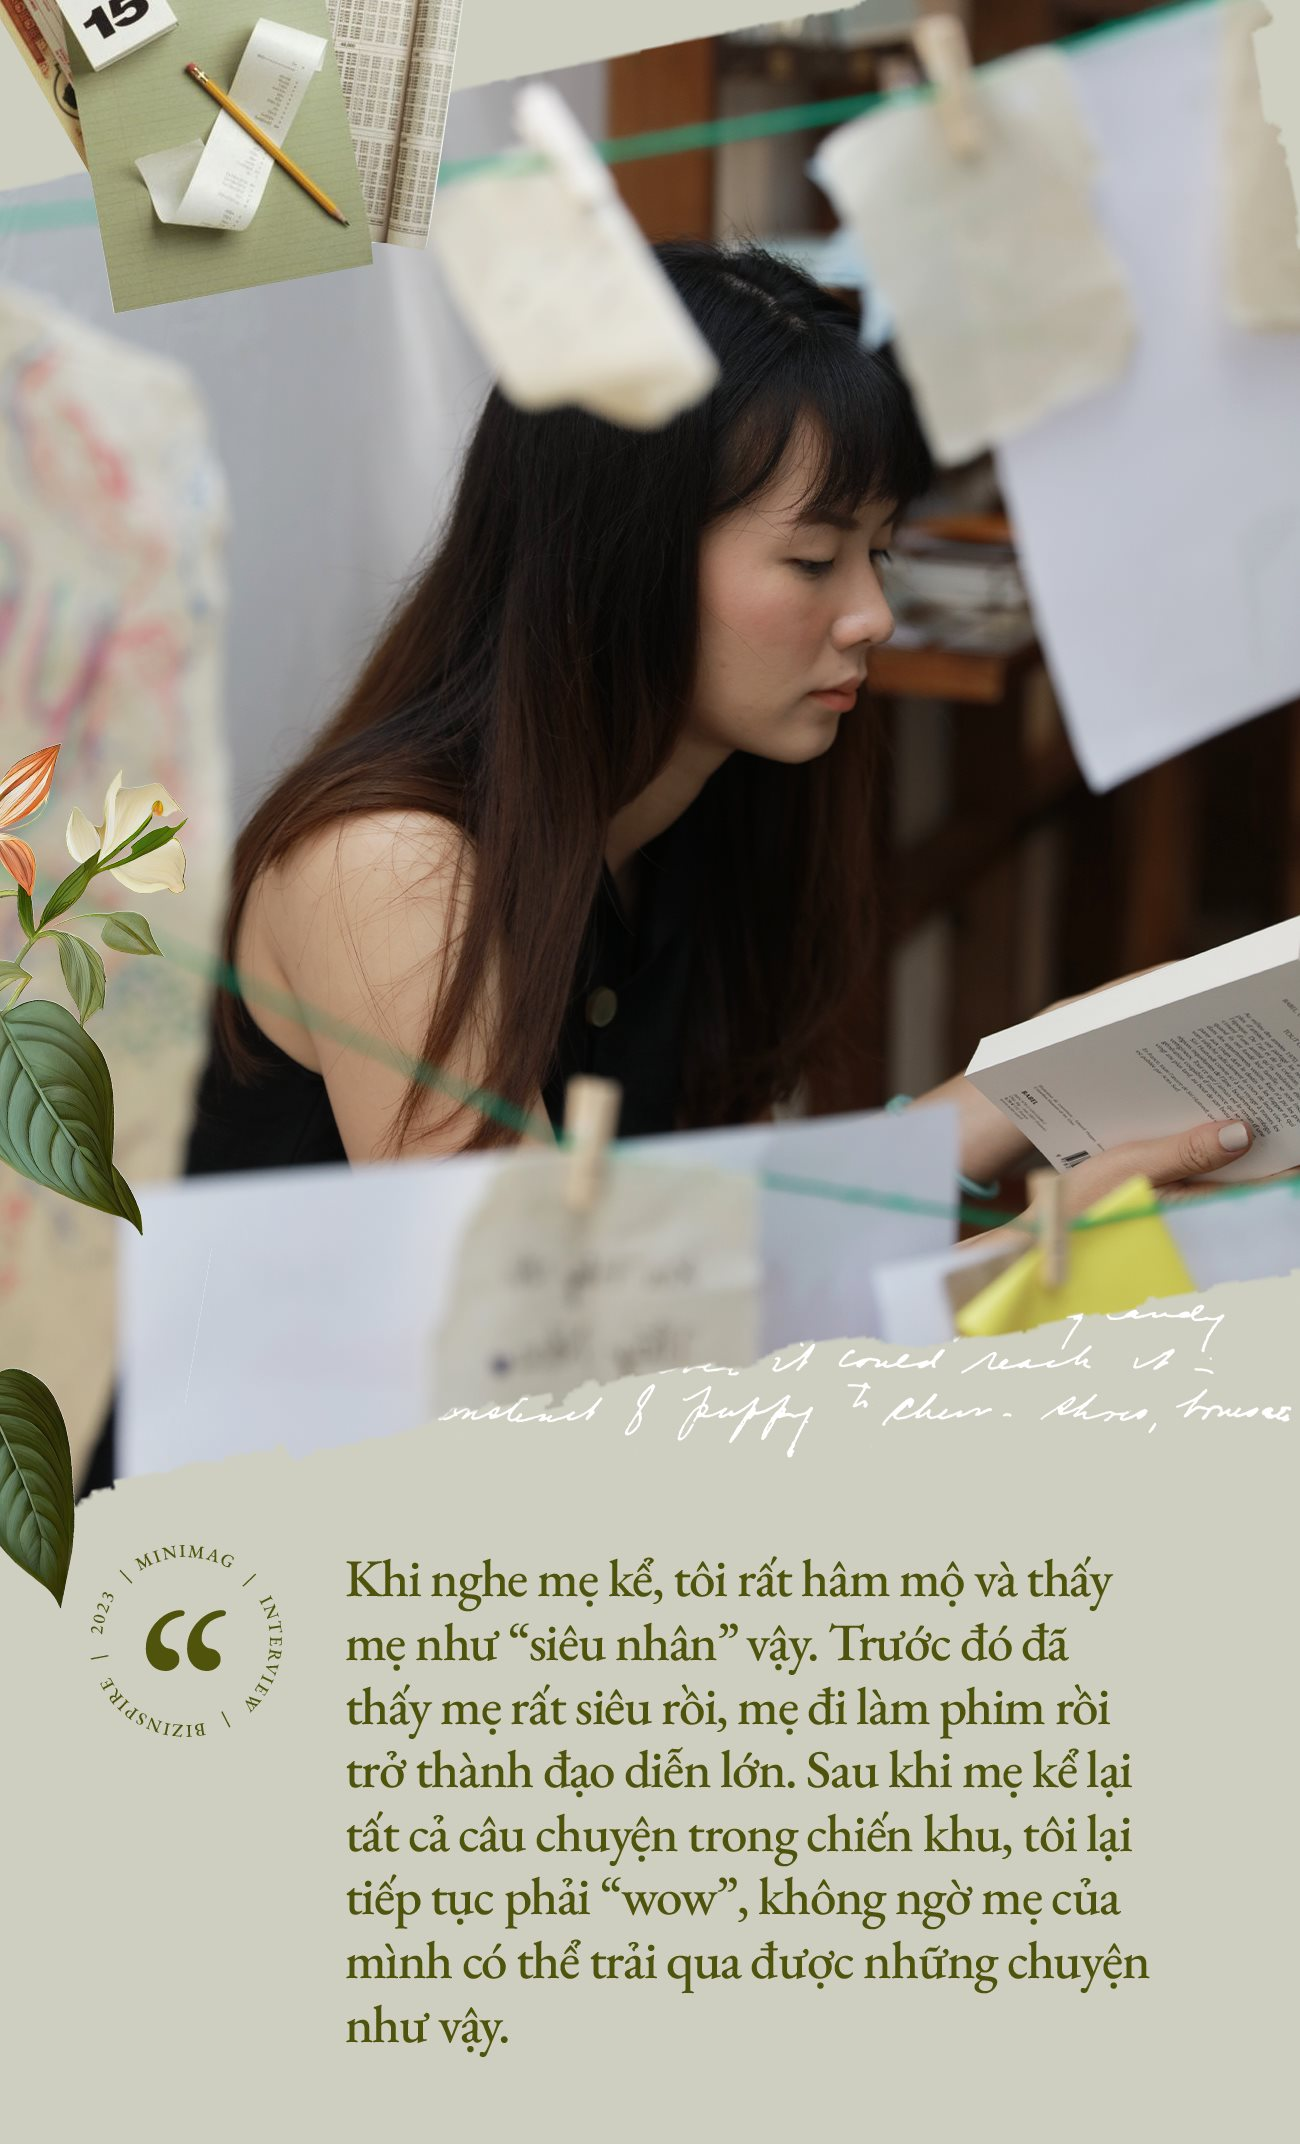 Trần Hải Anh - Forbes Under 30 Châu Á hồn nhiên kể chuyện của ba mẹ bằng truyện tranh tiếng Pháp, quyết tâm nung nấu tới mức xăm luôn chữ “Sống” trên tay - Ảnh 14.